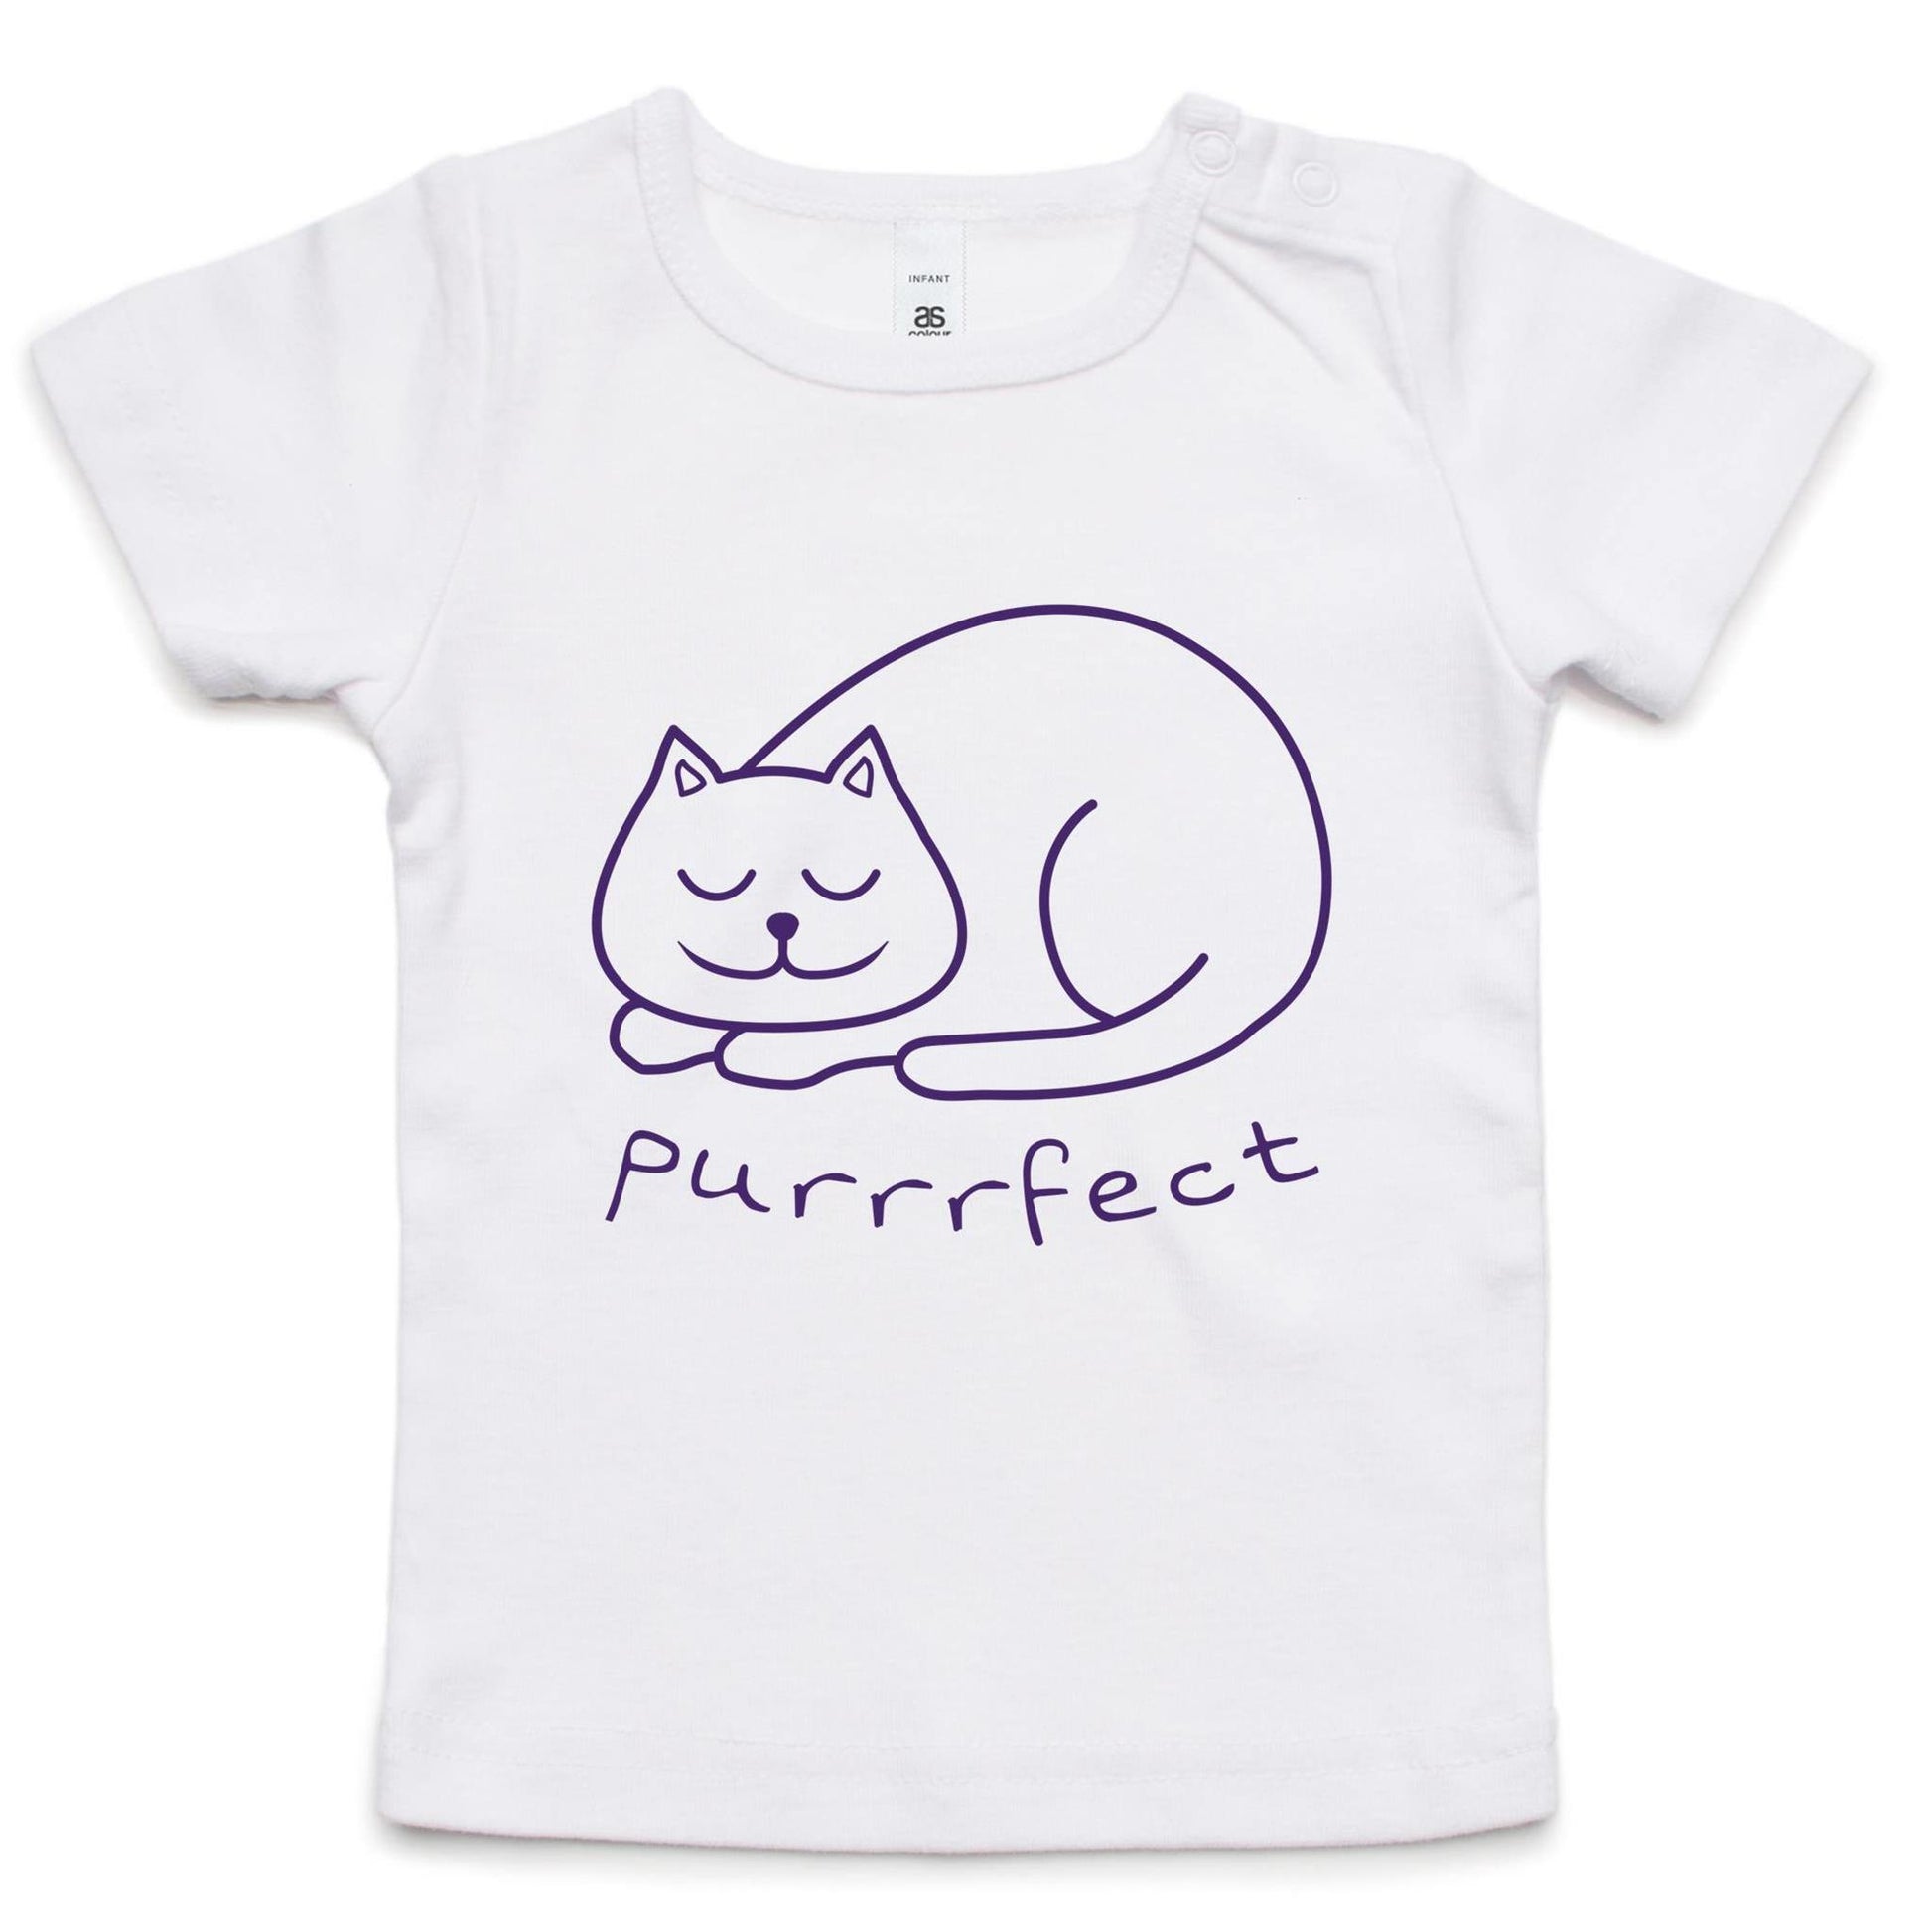 Purrrfect - Baby T-shirt White Baby T-shirt animal kids